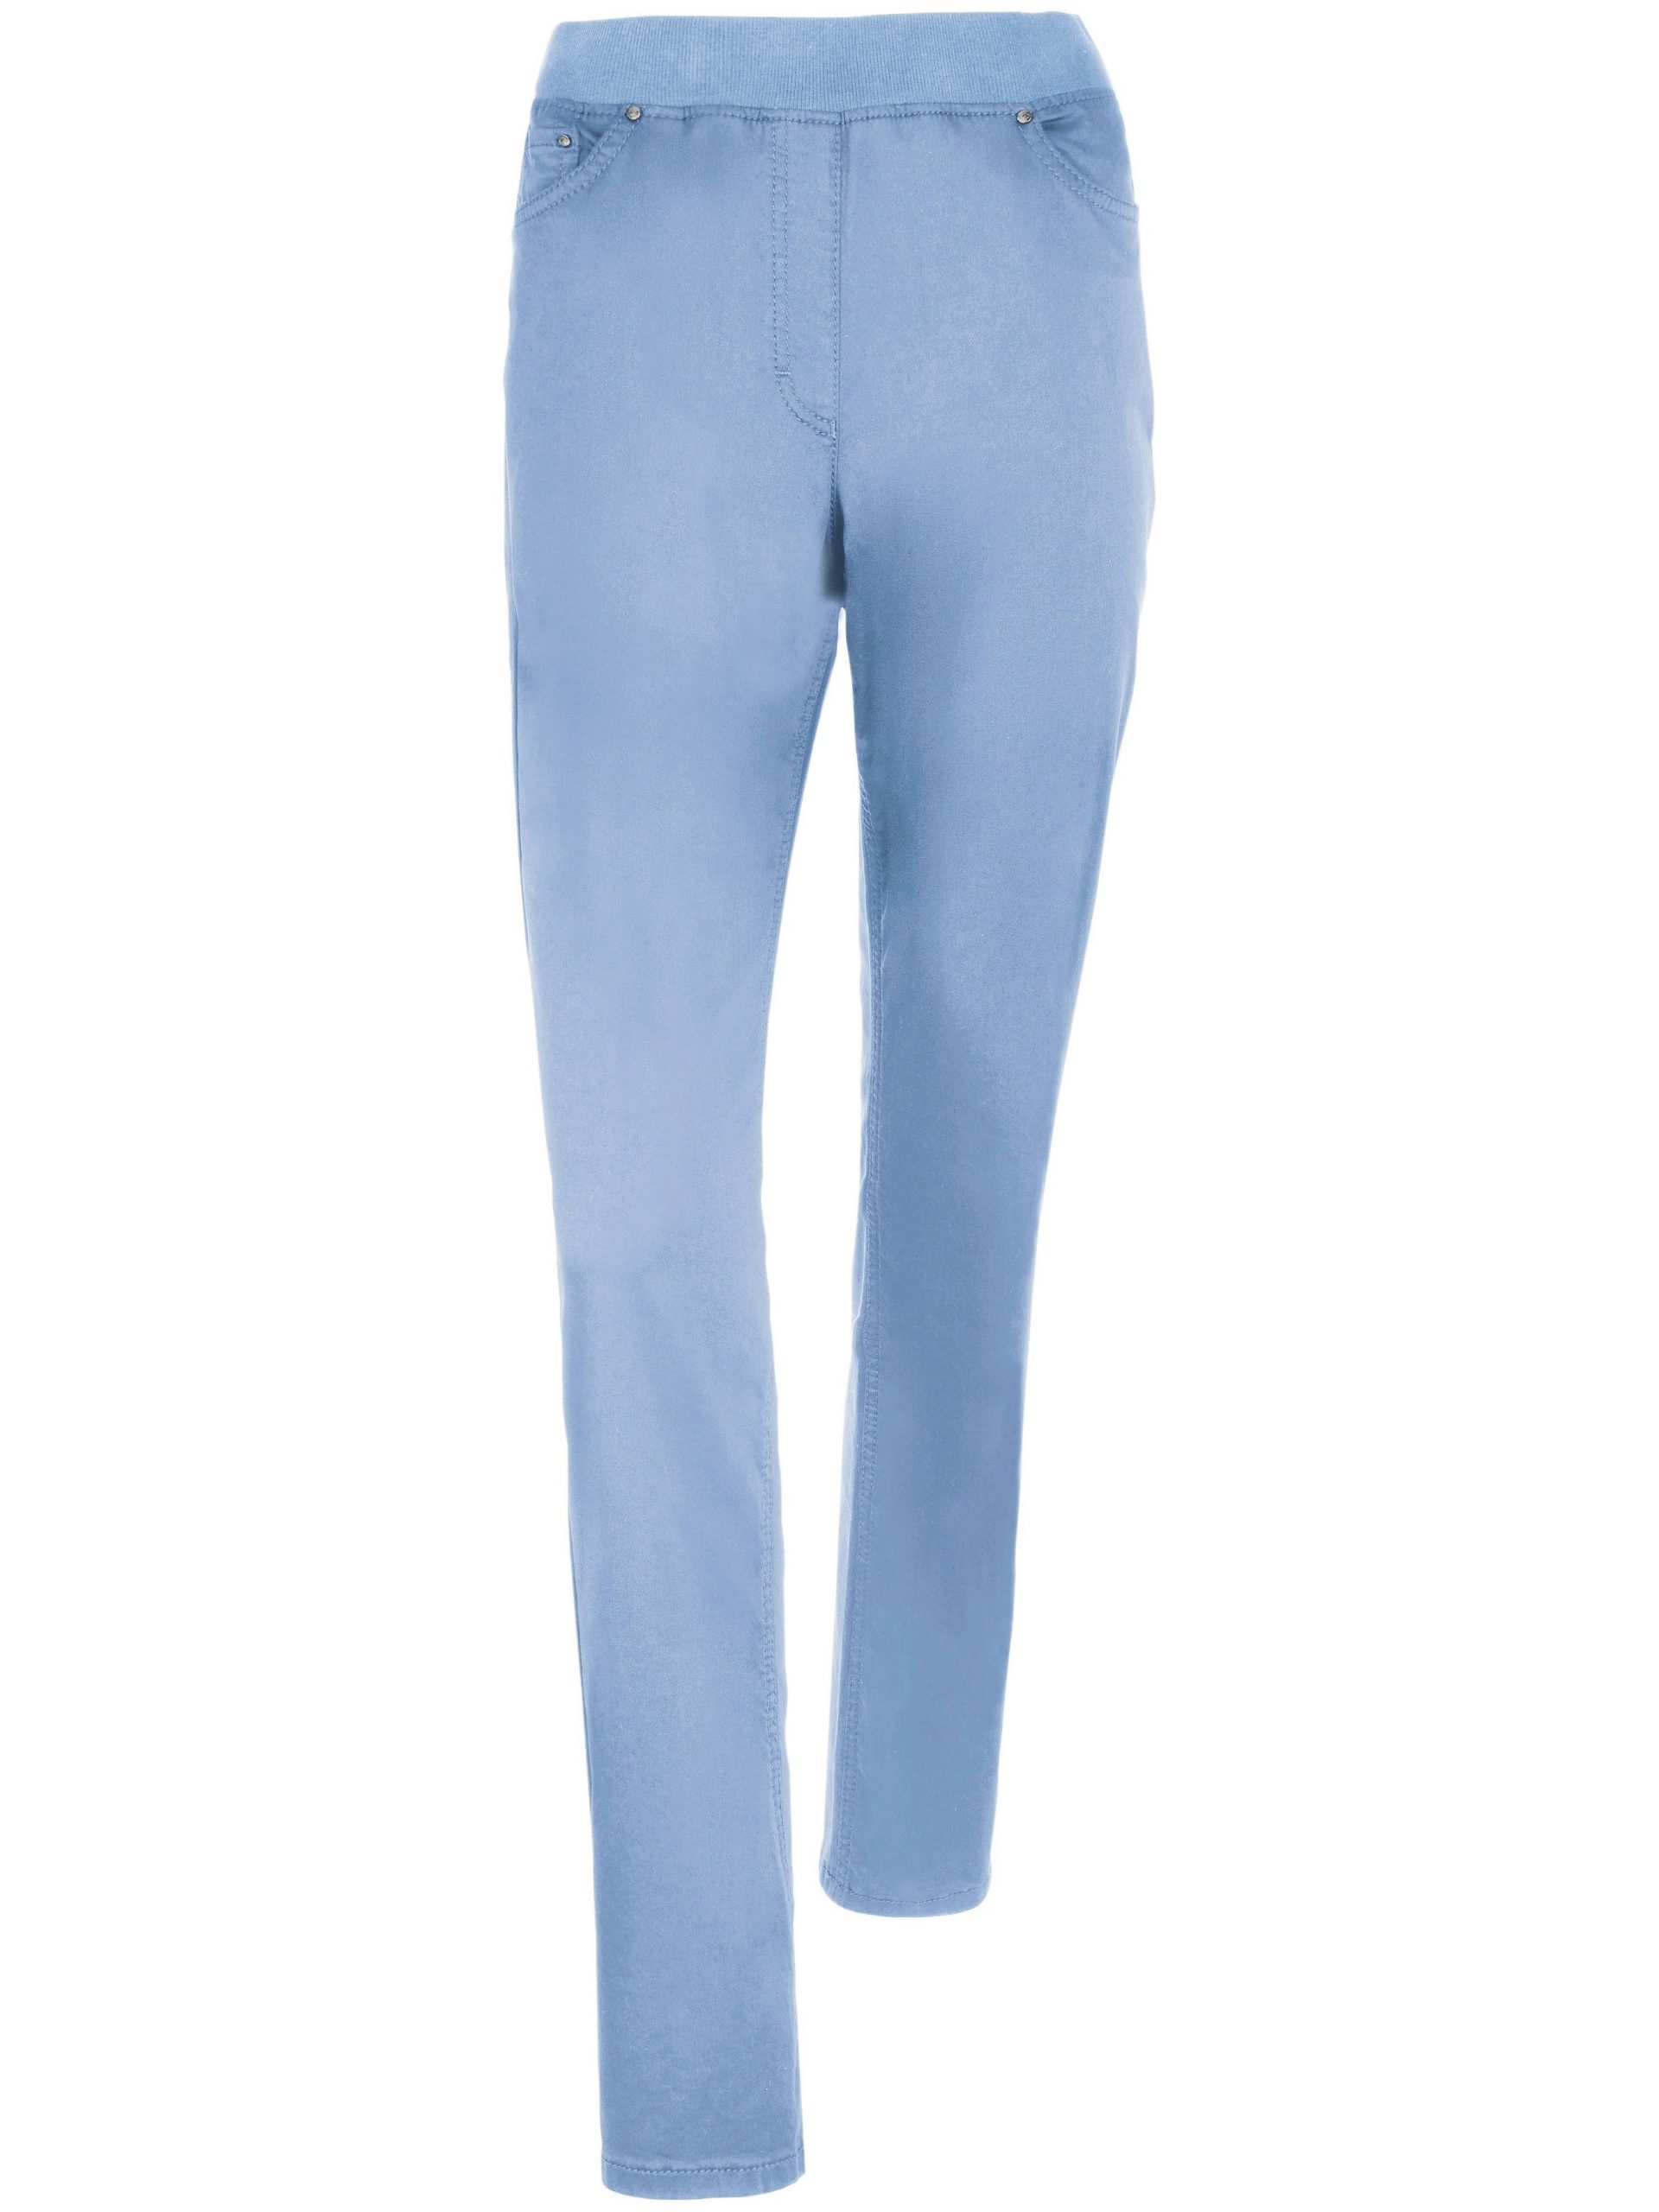 Comfort Plus-broek, model Carina Van Raphaela by Brax blauw Kopen